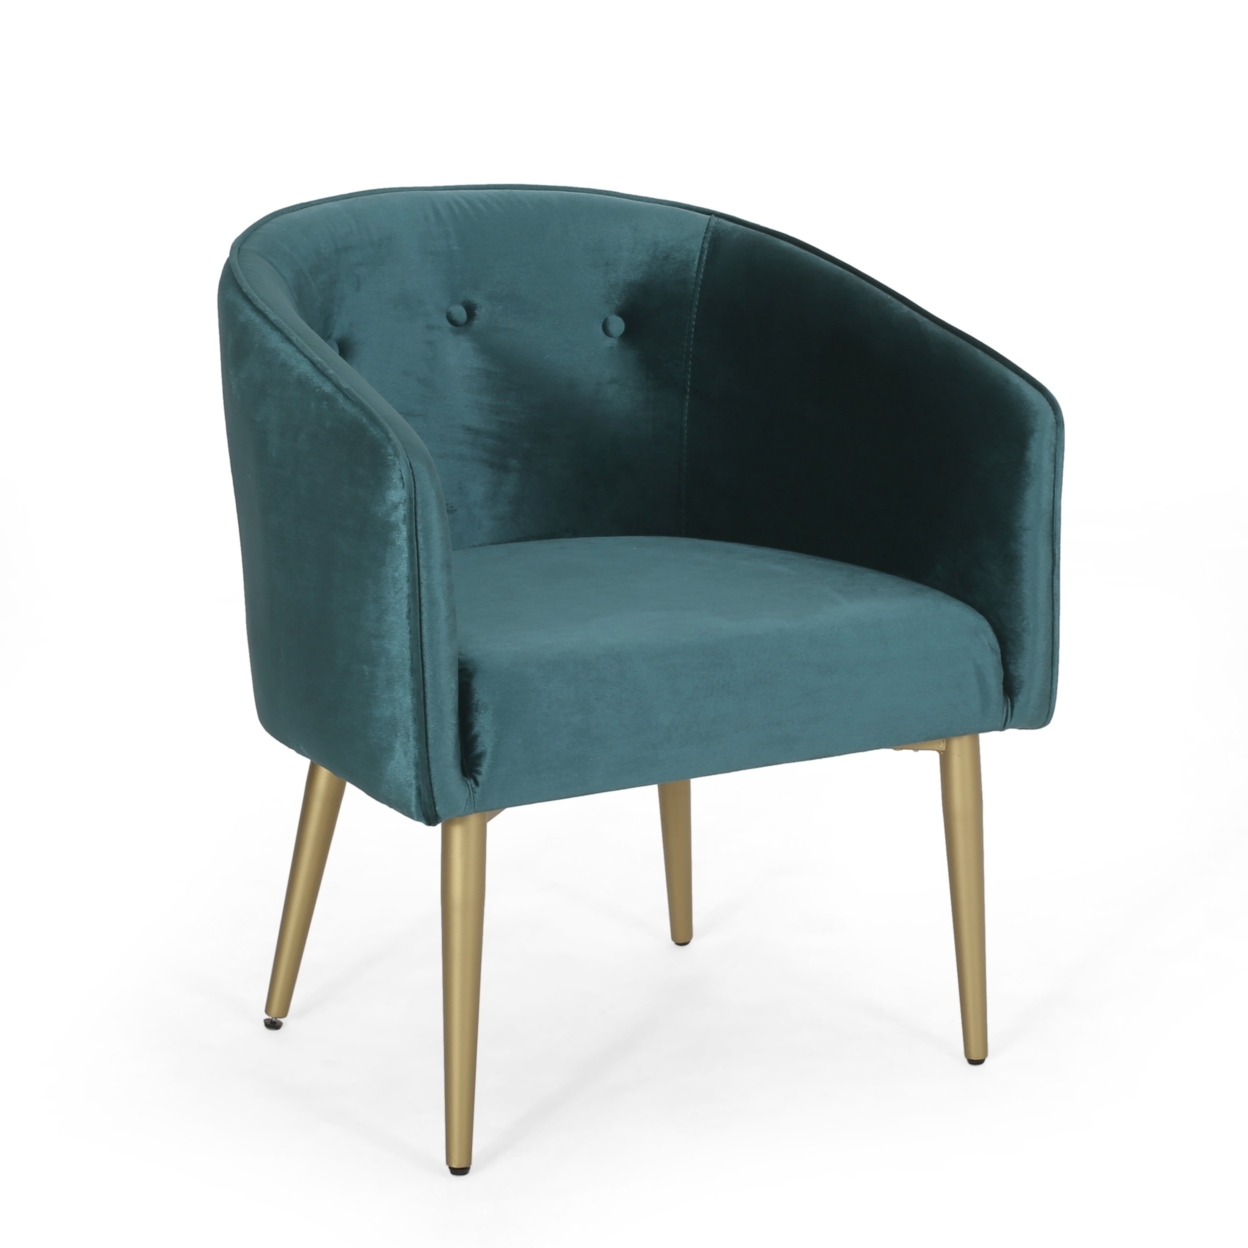 Malinta Modern Glam Tufted Velvet Dining Chair - Gold/teal